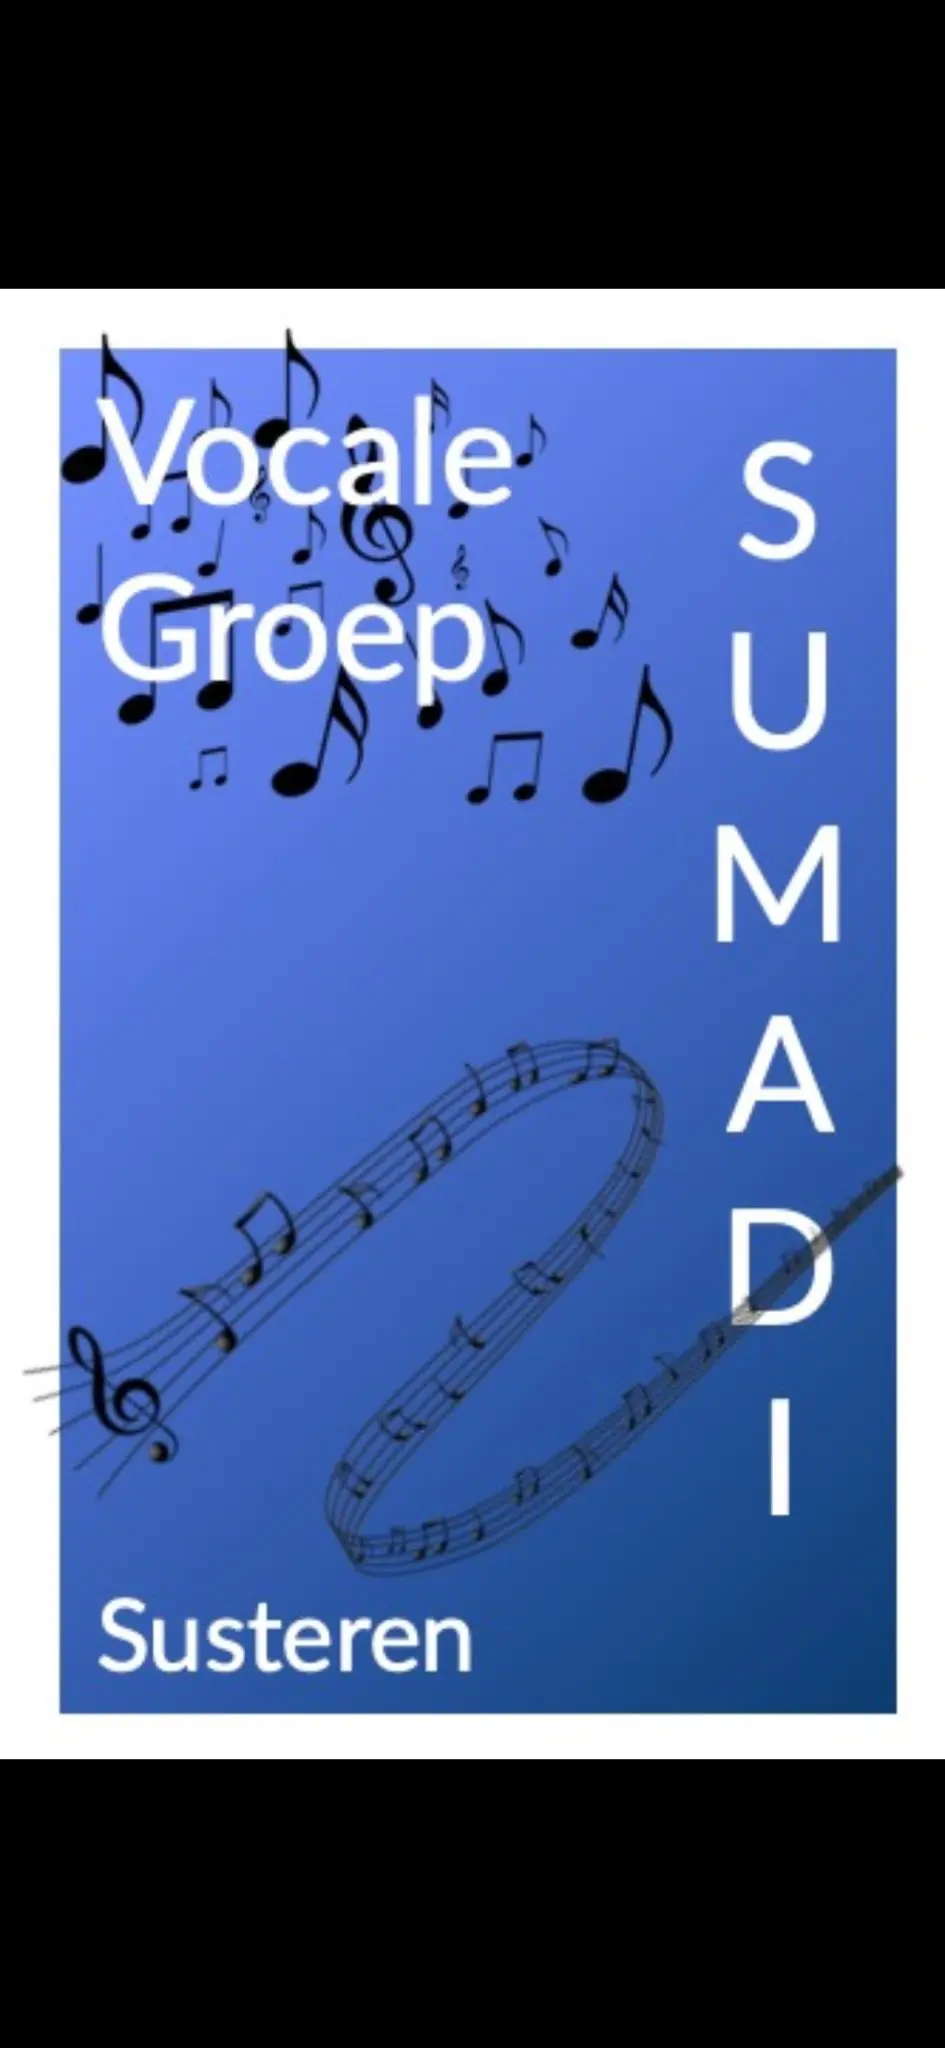 Vocale Groep Sumadi